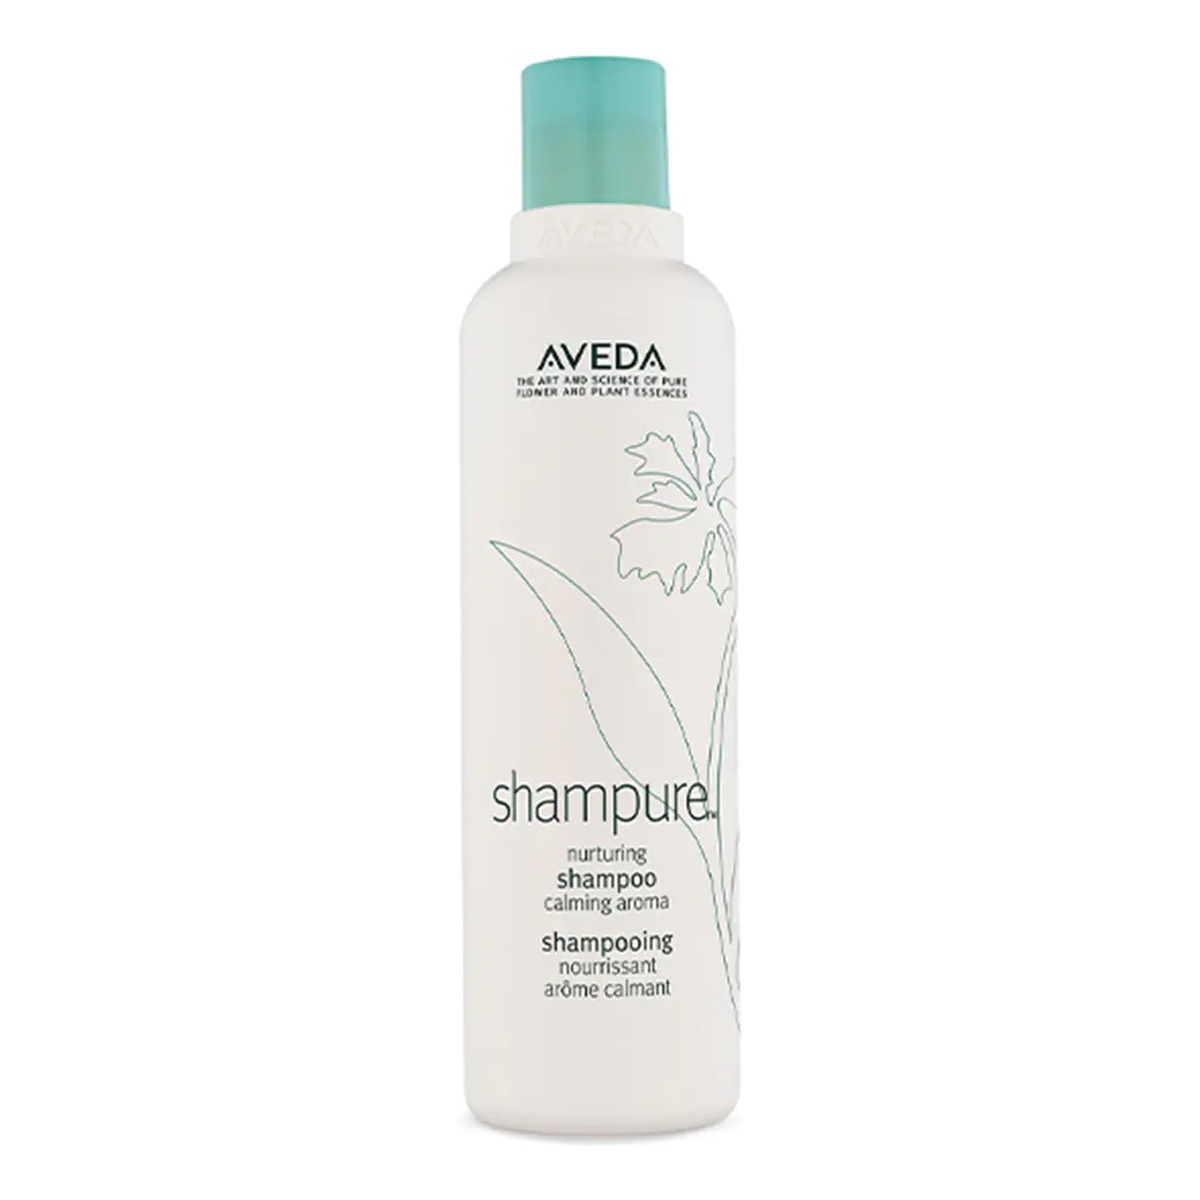 Aveda Shampure nurturing shampoo pielęgnujący szampon do włosów 250ml